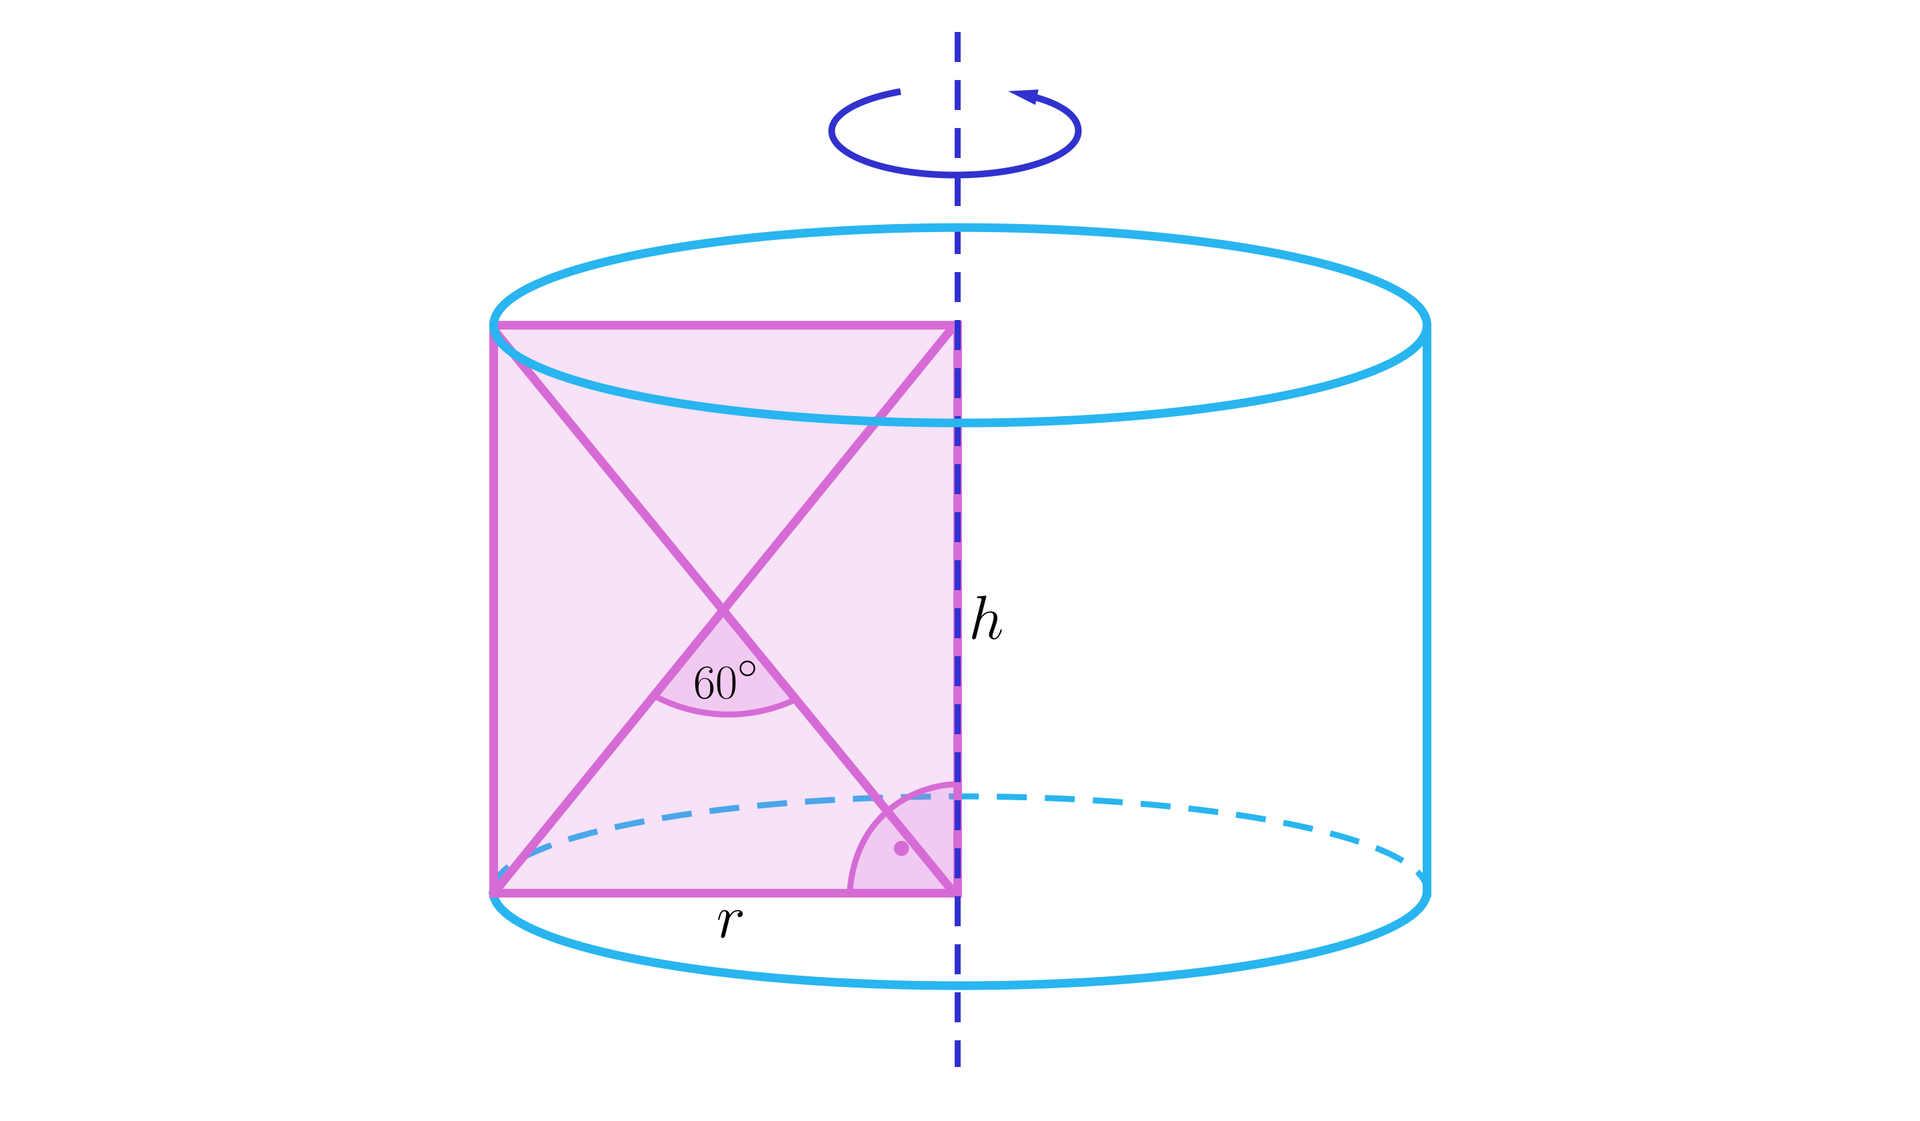 Ilustracja przedstawia walec powstały poprzez obrót prostokąta zawartego wewnątrz bryły. Na rysunku zaznaczono promień podstawy walca oznaczony jako r, będący jednocześnie krótszym bokiem prostokąta. Wewnątrz bryły zaznaczona została także wysokość bryły oznaczona poprzez h, będąca jednocześnie dłuższym bokiem prostokąta. Wewnątrz prostokąta zaznaczono dwie przekątne tworzące kąt ostry sześćdziesiąt stopni. 